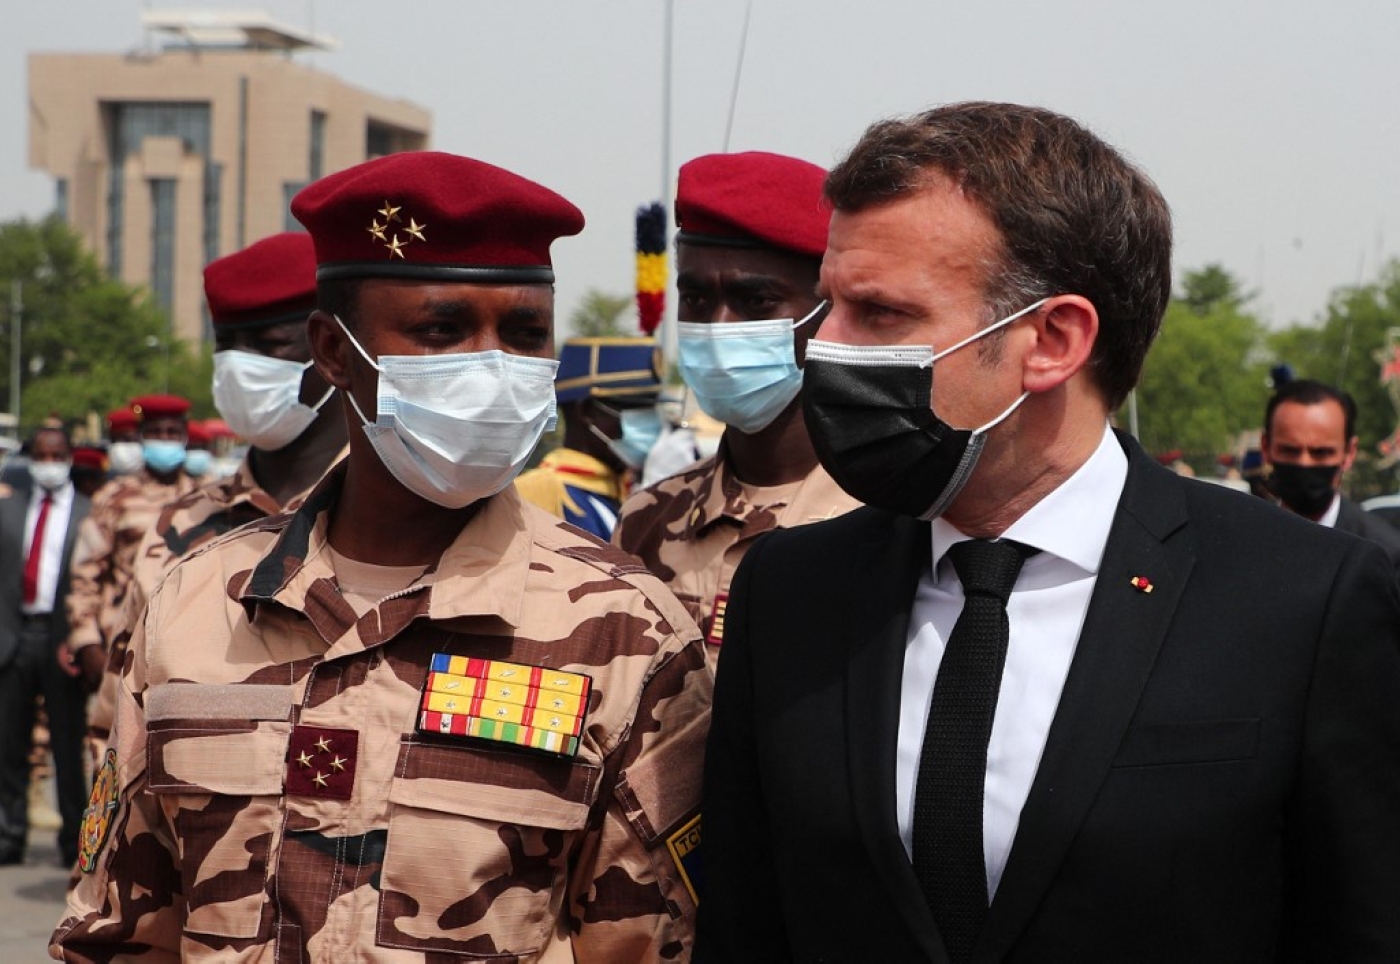 Le président français Emmanuel Macron aux côtés du fils d’Idriss Déby, Mahamat Idriss Déby, arrive pour assister aux funérailles nationales du président tchadien à N’Djaména le 23 avril 2021 (AFP)